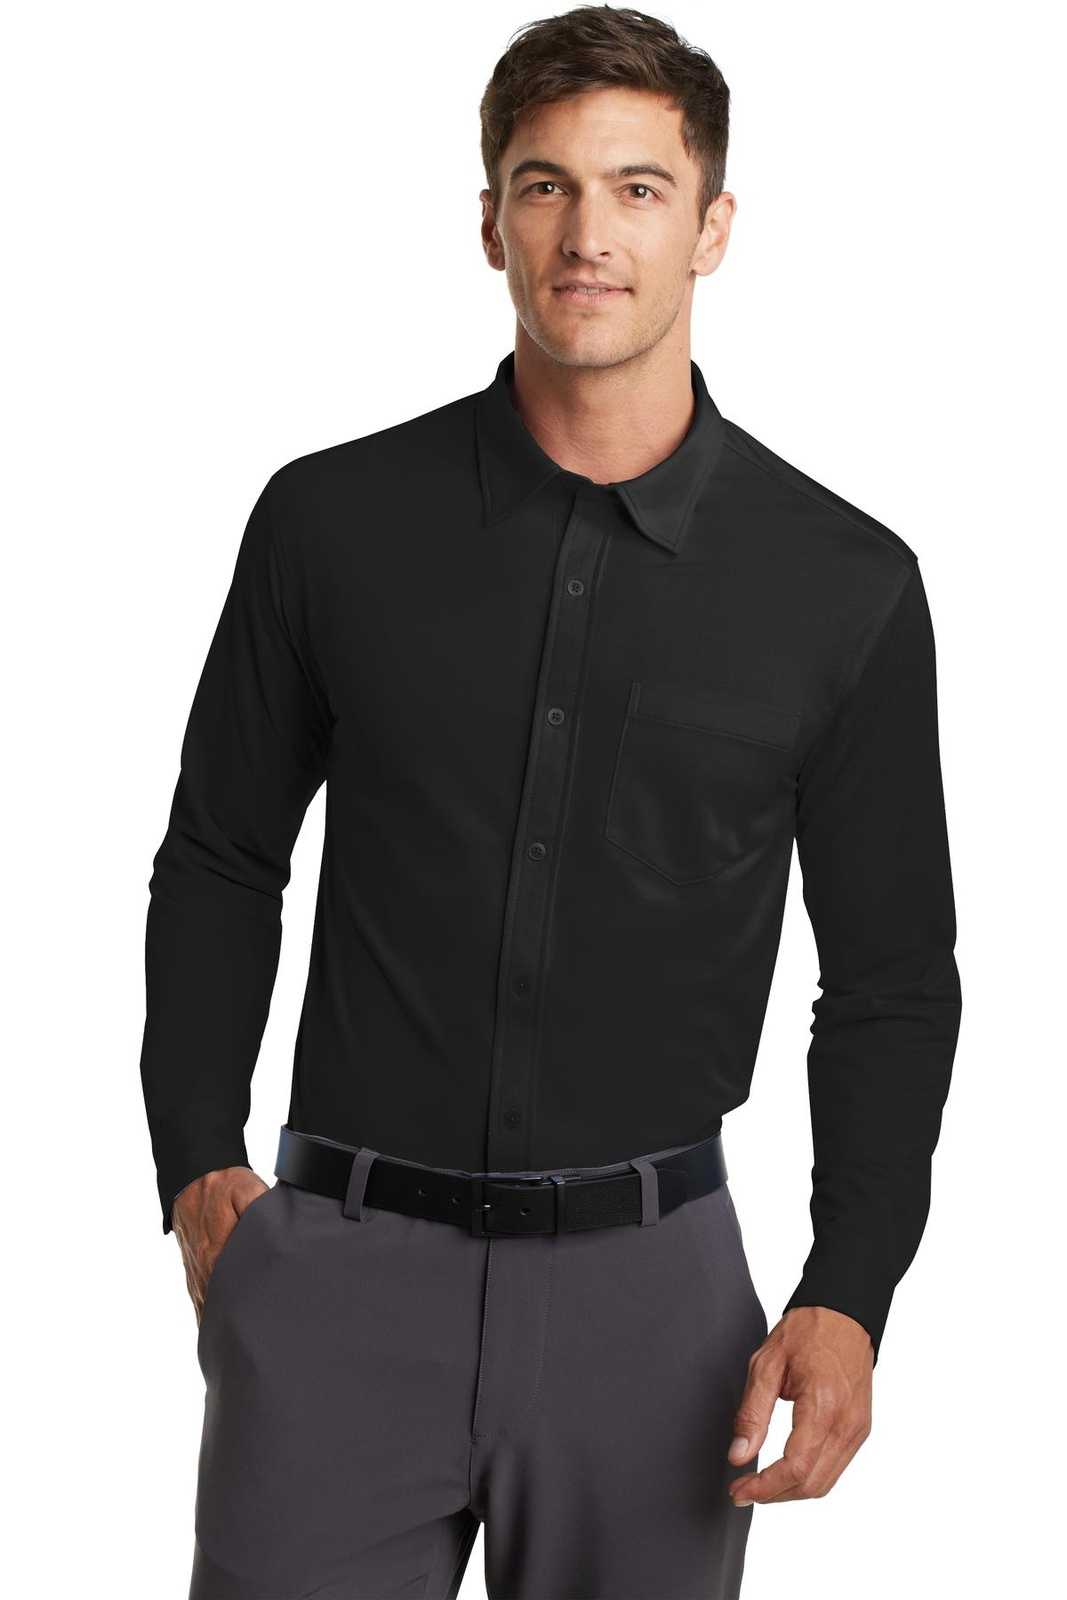 Port Authority K570 Dimension Knit Dress Shirt - Black - HIT a Double - 1